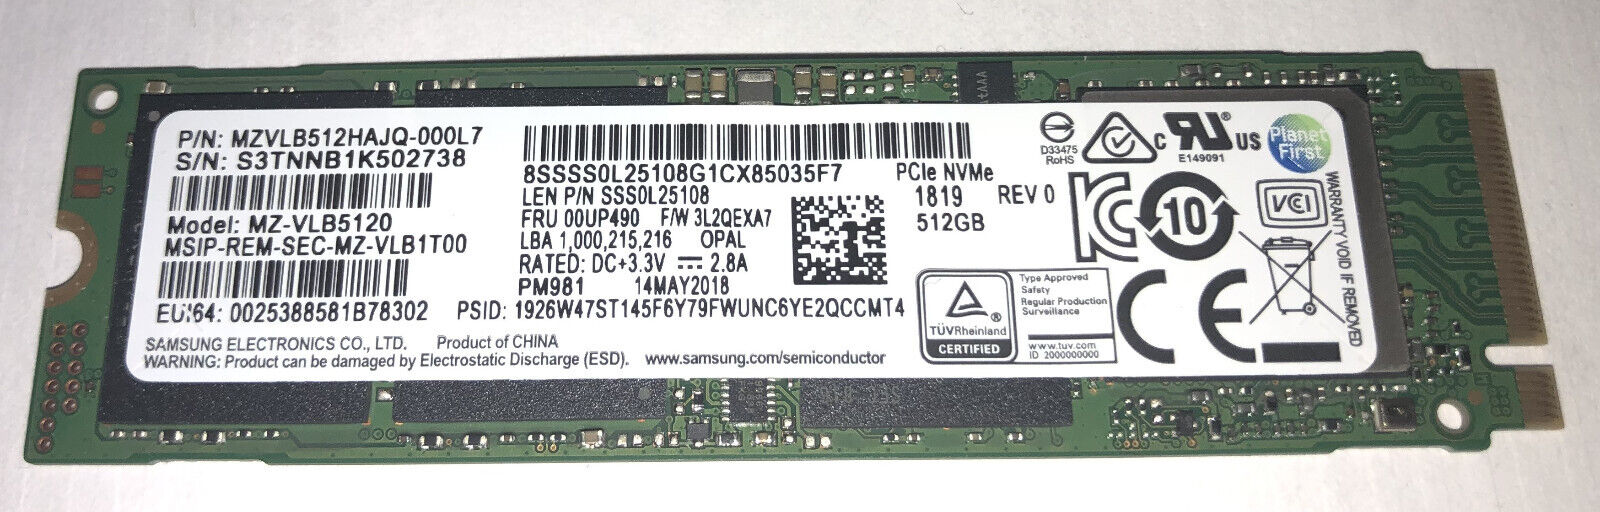 NEW SAMSUNG 512GB MZ-VLB5120 SSD M.2 NVMe MZVLB512HAJQ-000L7 – Guaranteed